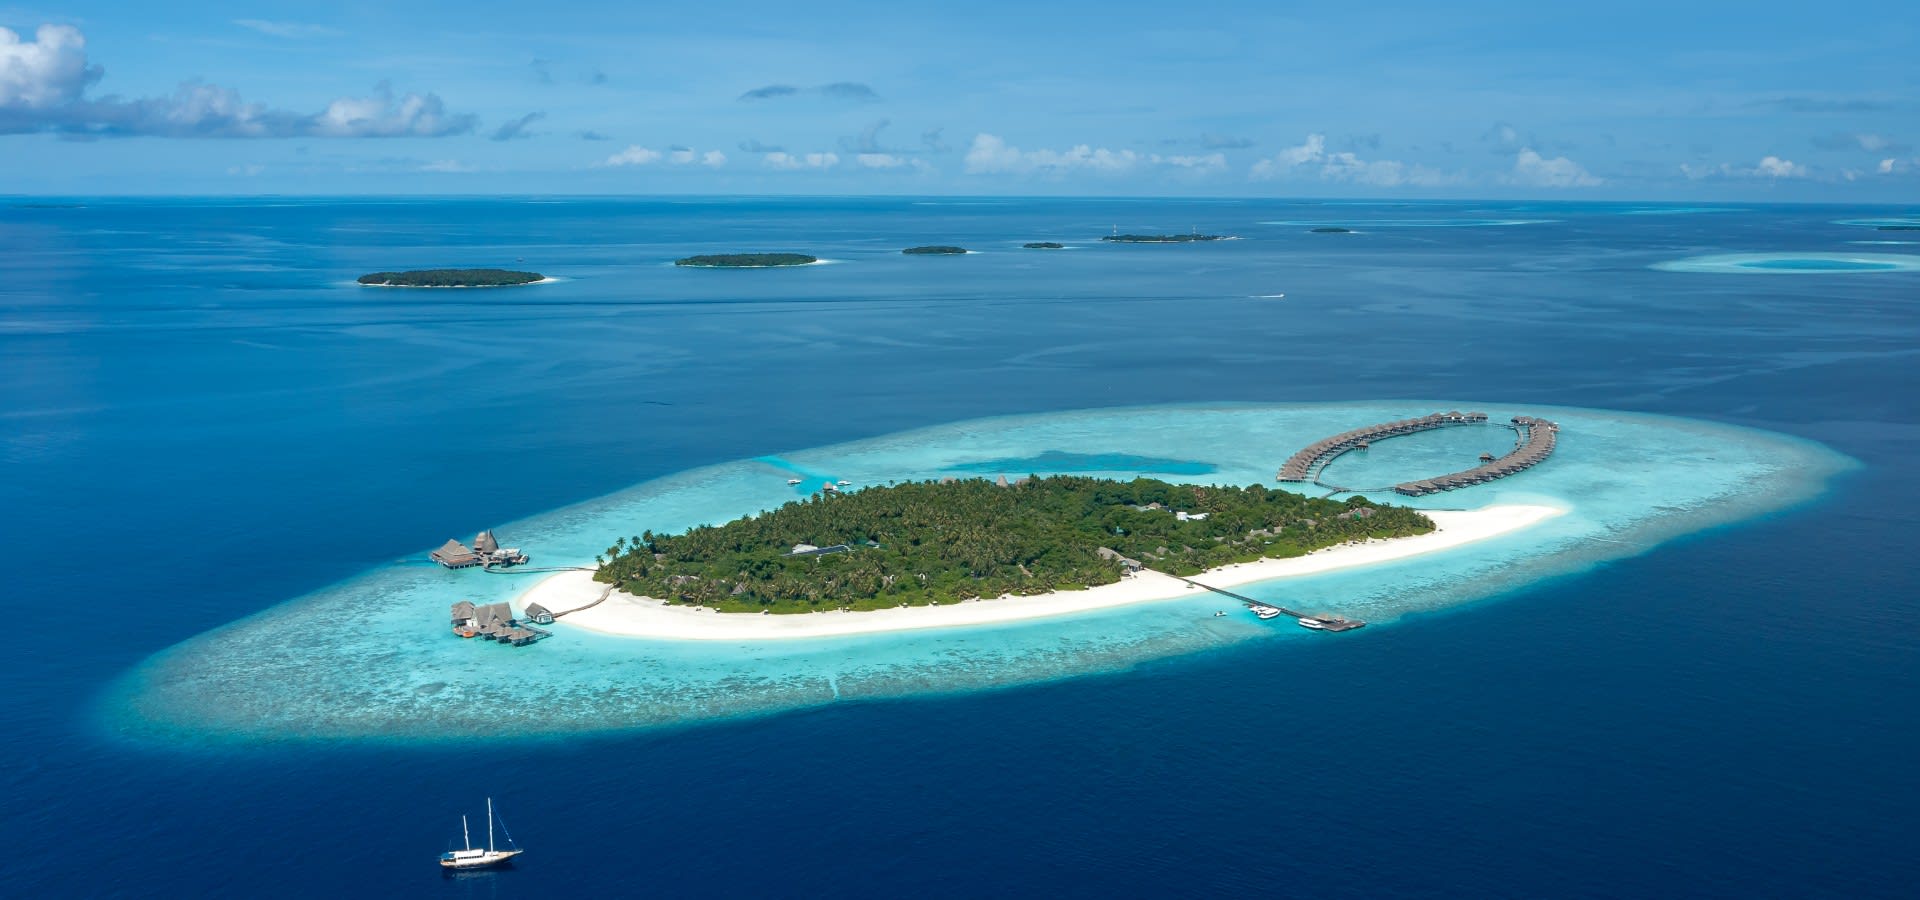 Aerial view of Anantara Kihavah Maldives Villas